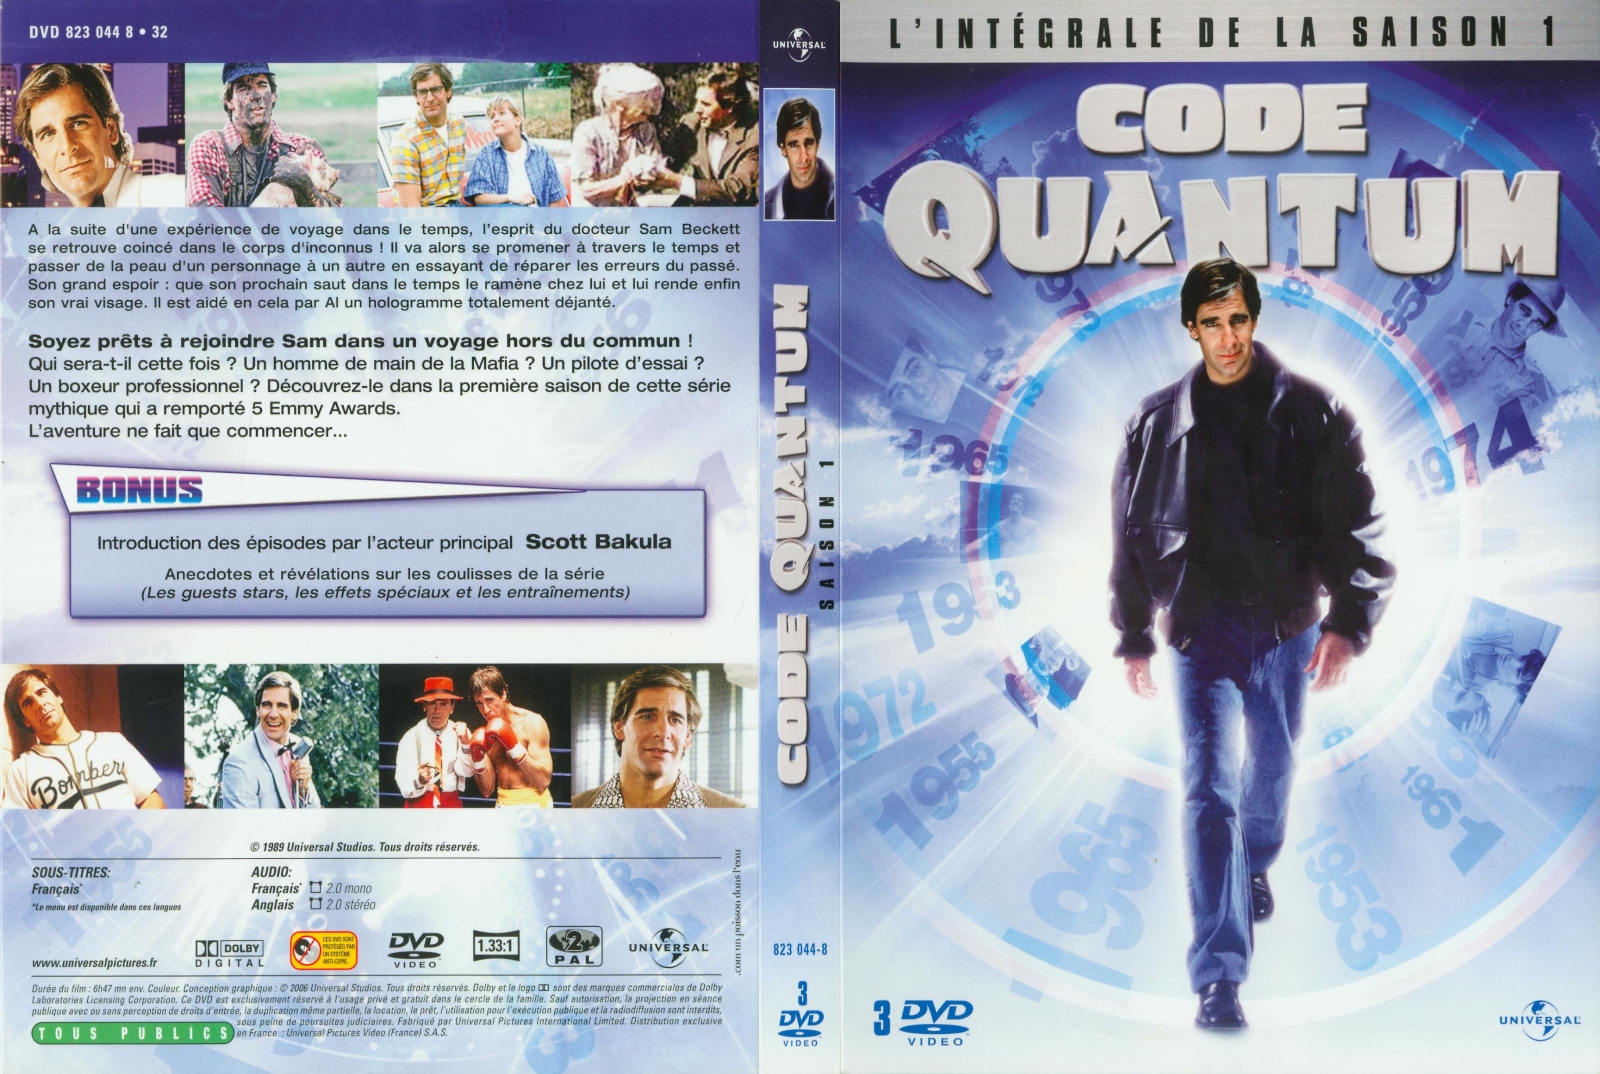 Jaquette DVD Code Quantum saison 1 COFFRET